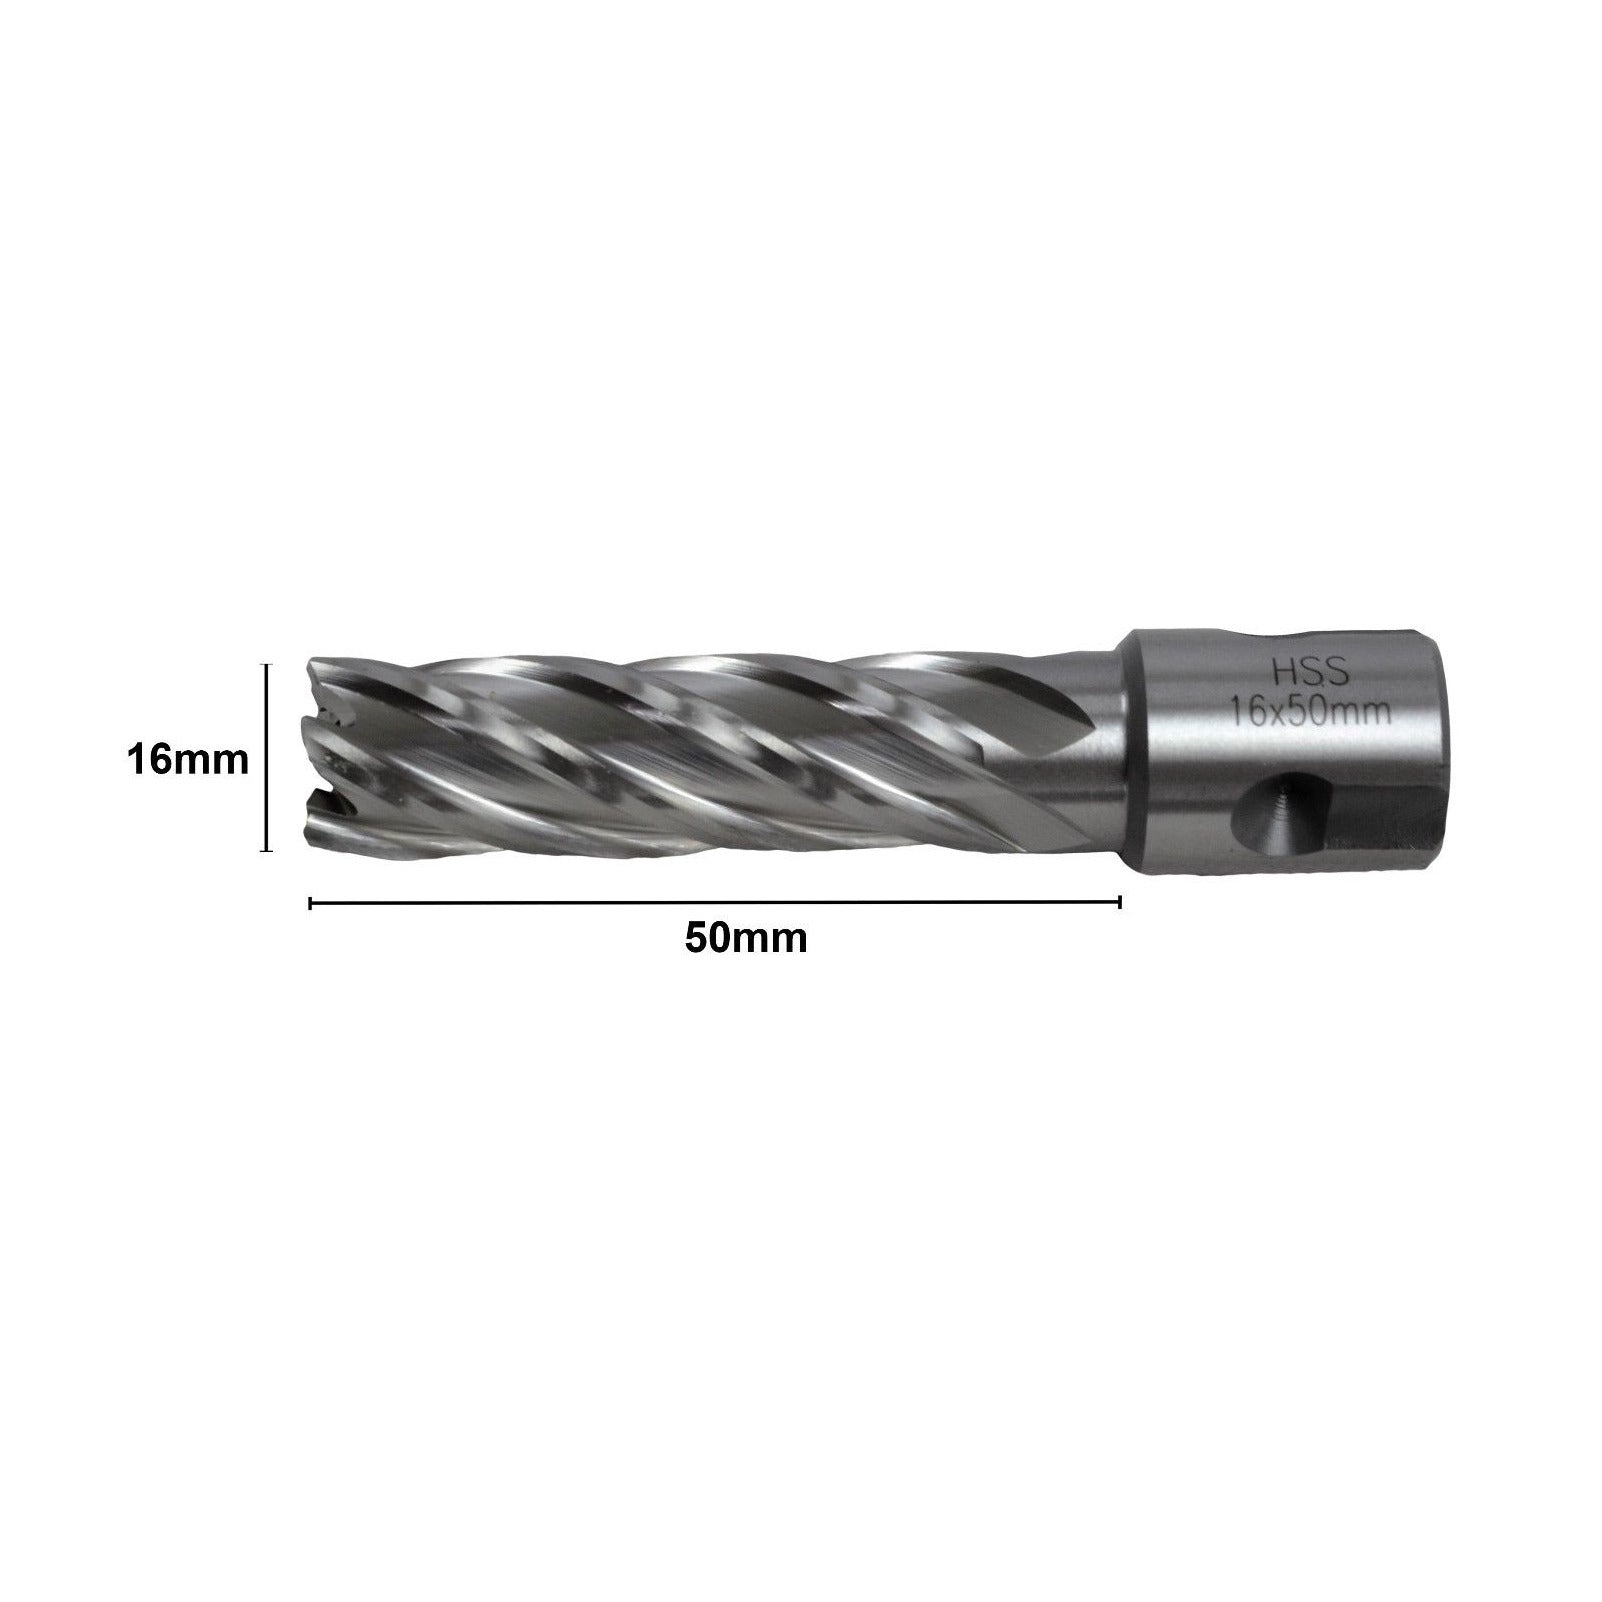 16x50mm HSS Annular Broach Cutter ; Magnetic Drill ; Rotabroach ; Universal Shank